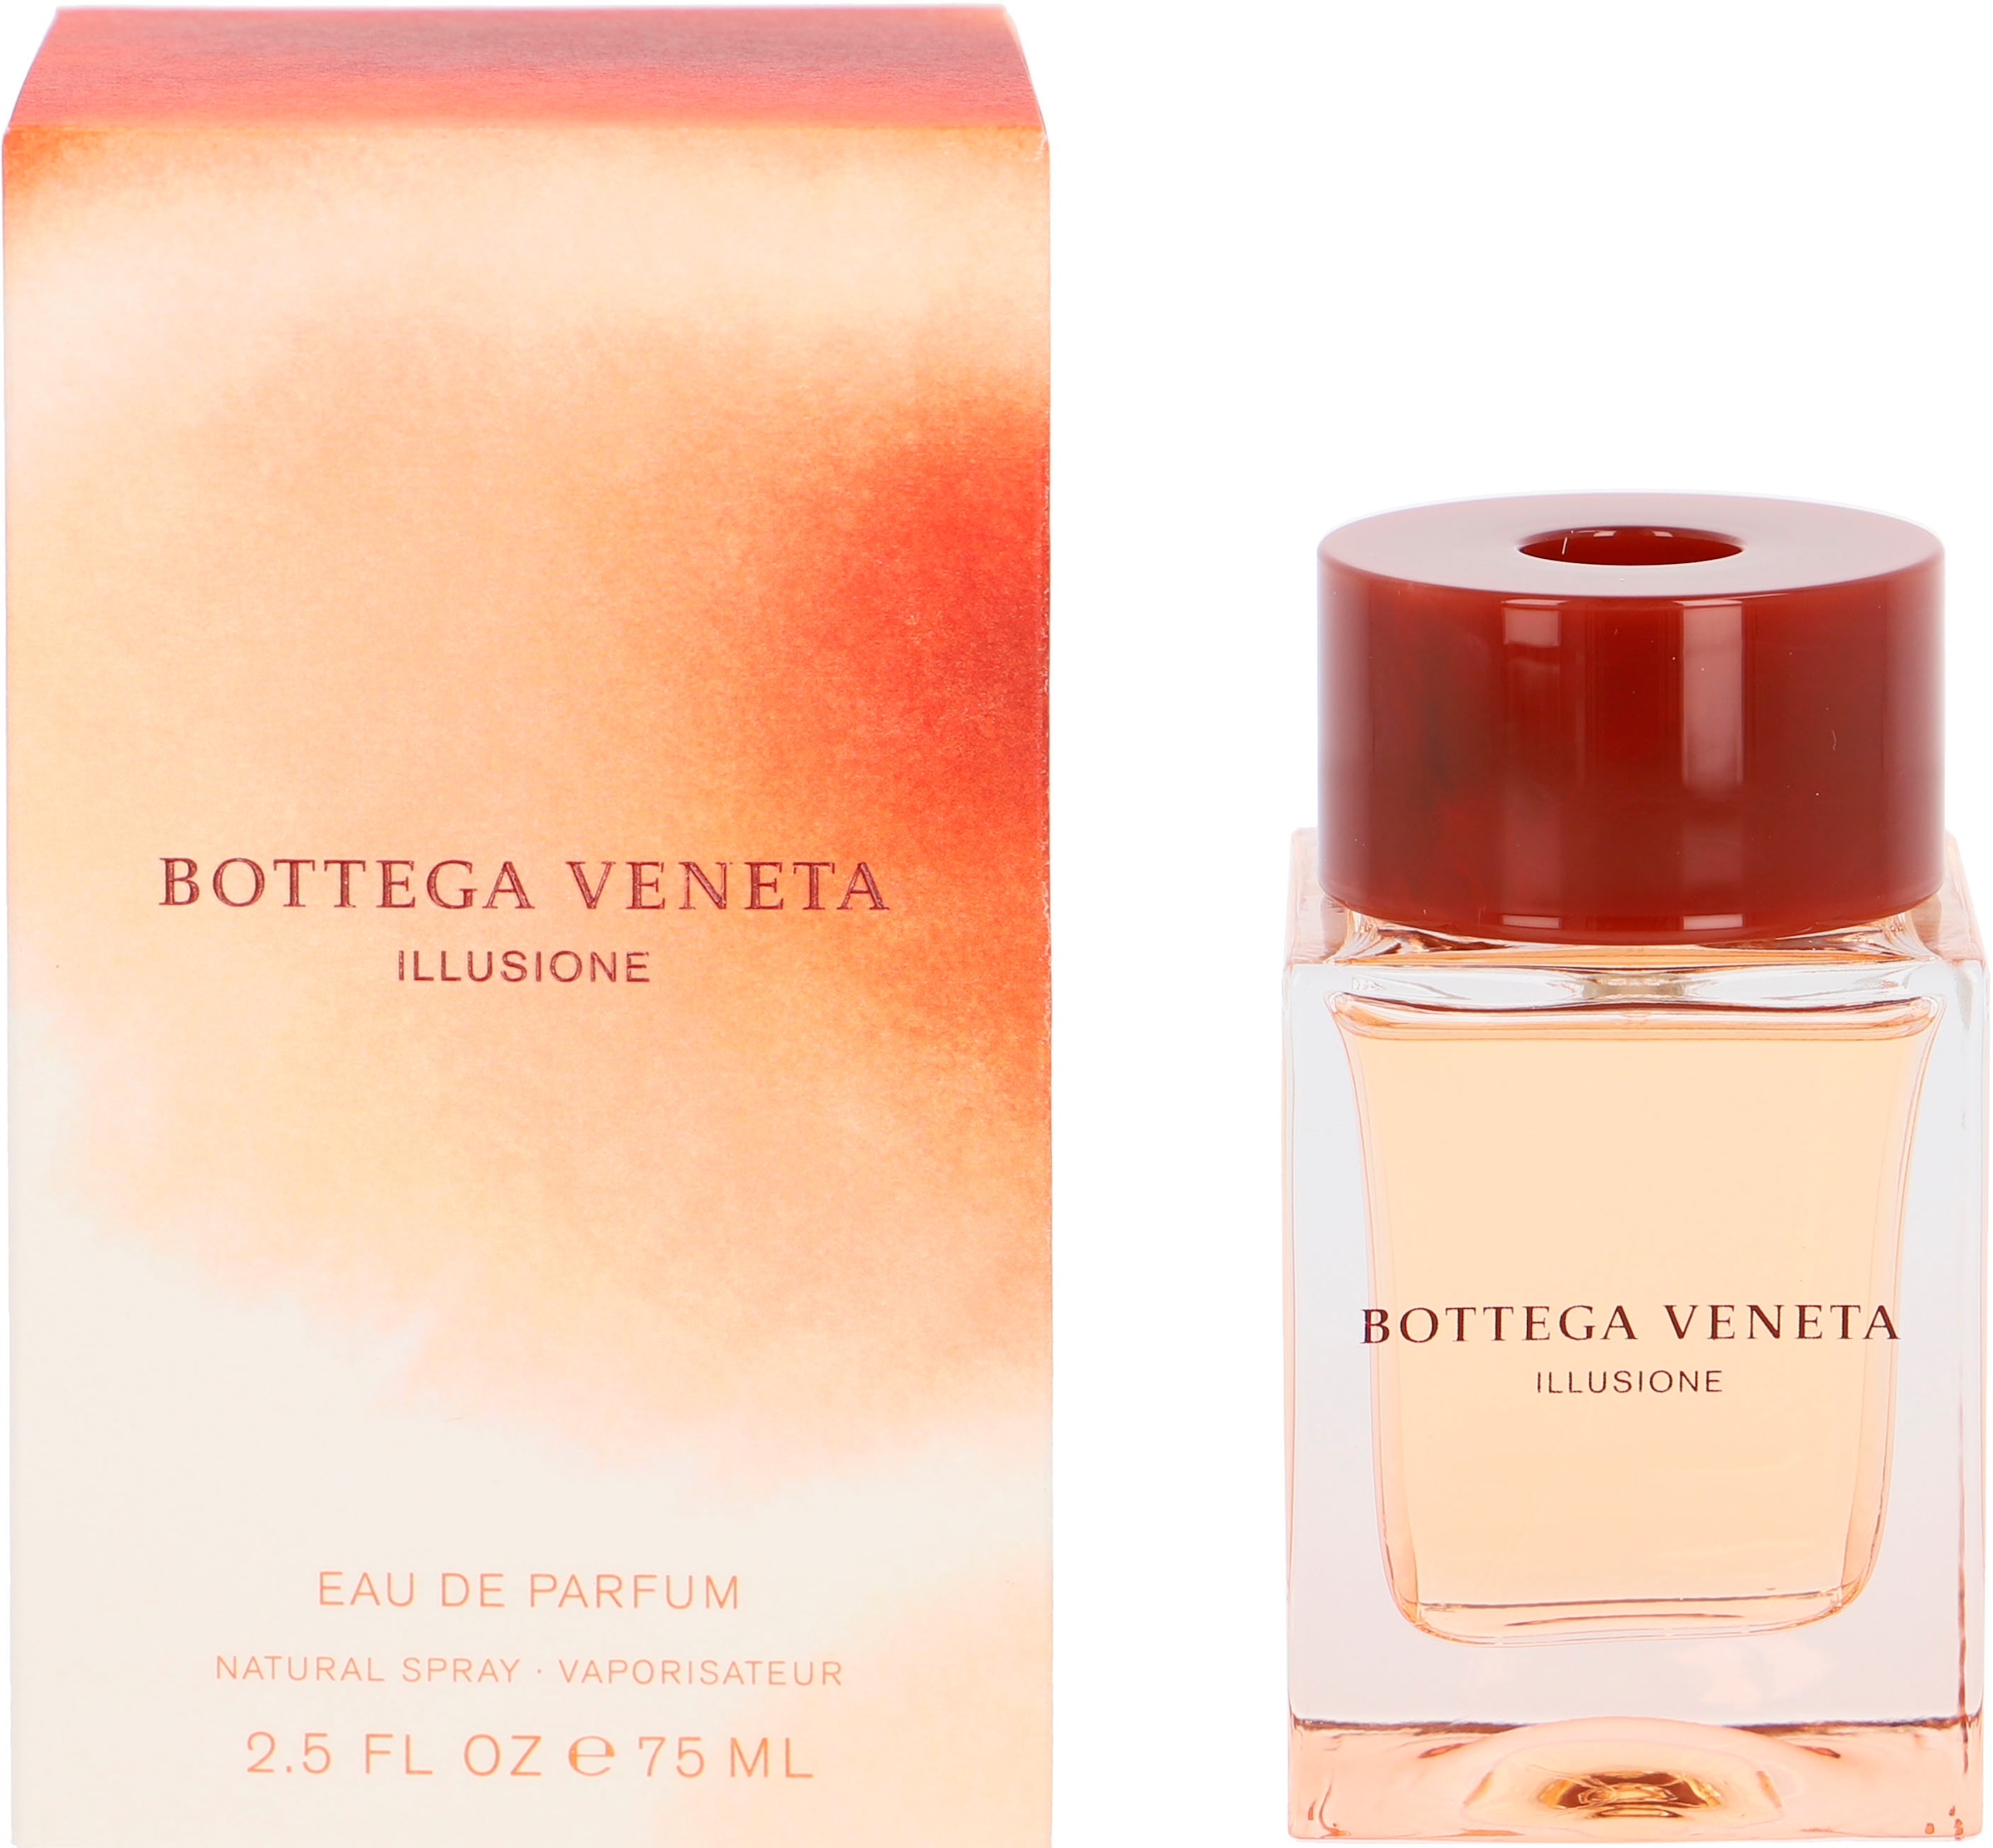 BOTTEGA VENETA Eau de Parfum Online-Shop kaufen Femme« Veneta im »Bottega Illusione